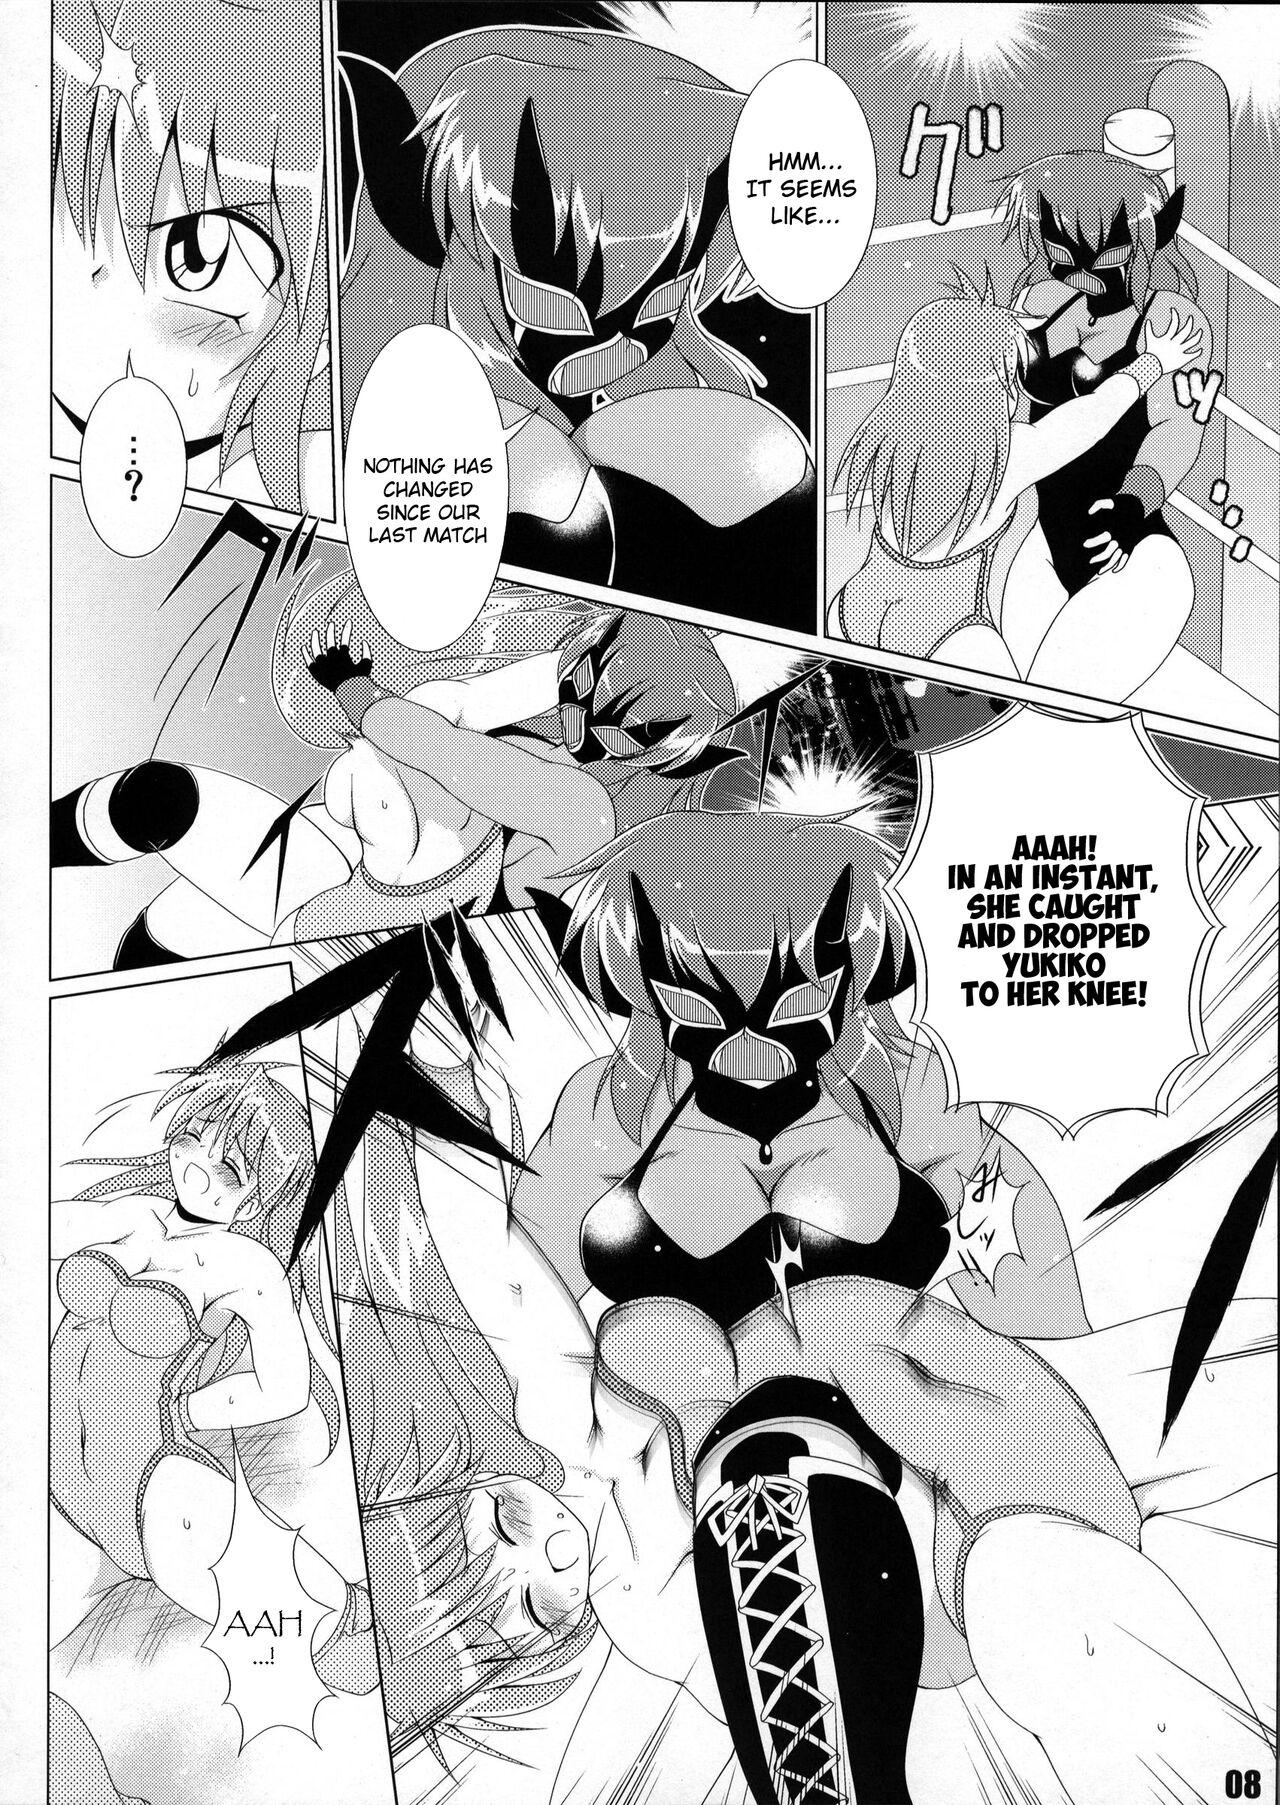 Mother fuck (COMIC1☆6) [Soket=Pocket (Soket)] Mighty Yukiko vs Dark Star Chaos (FALLIN' ANGELS4 (WRESTLE ANGELS)) - Wrestle angels Teenporno - Page 4